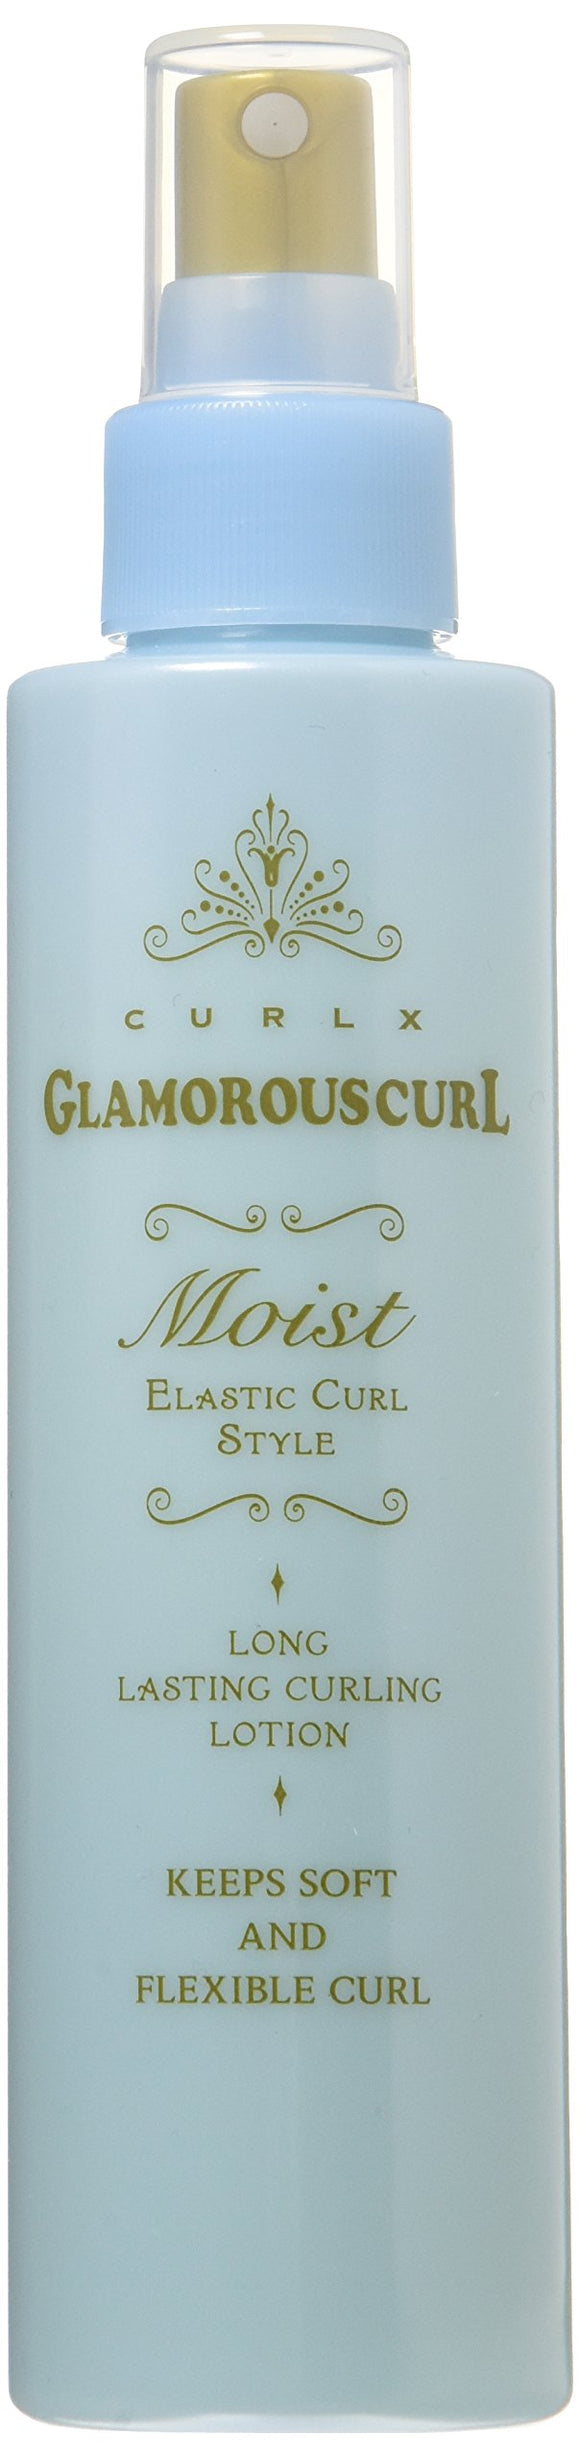 Curl X Glamorous Curl Moist 150ml